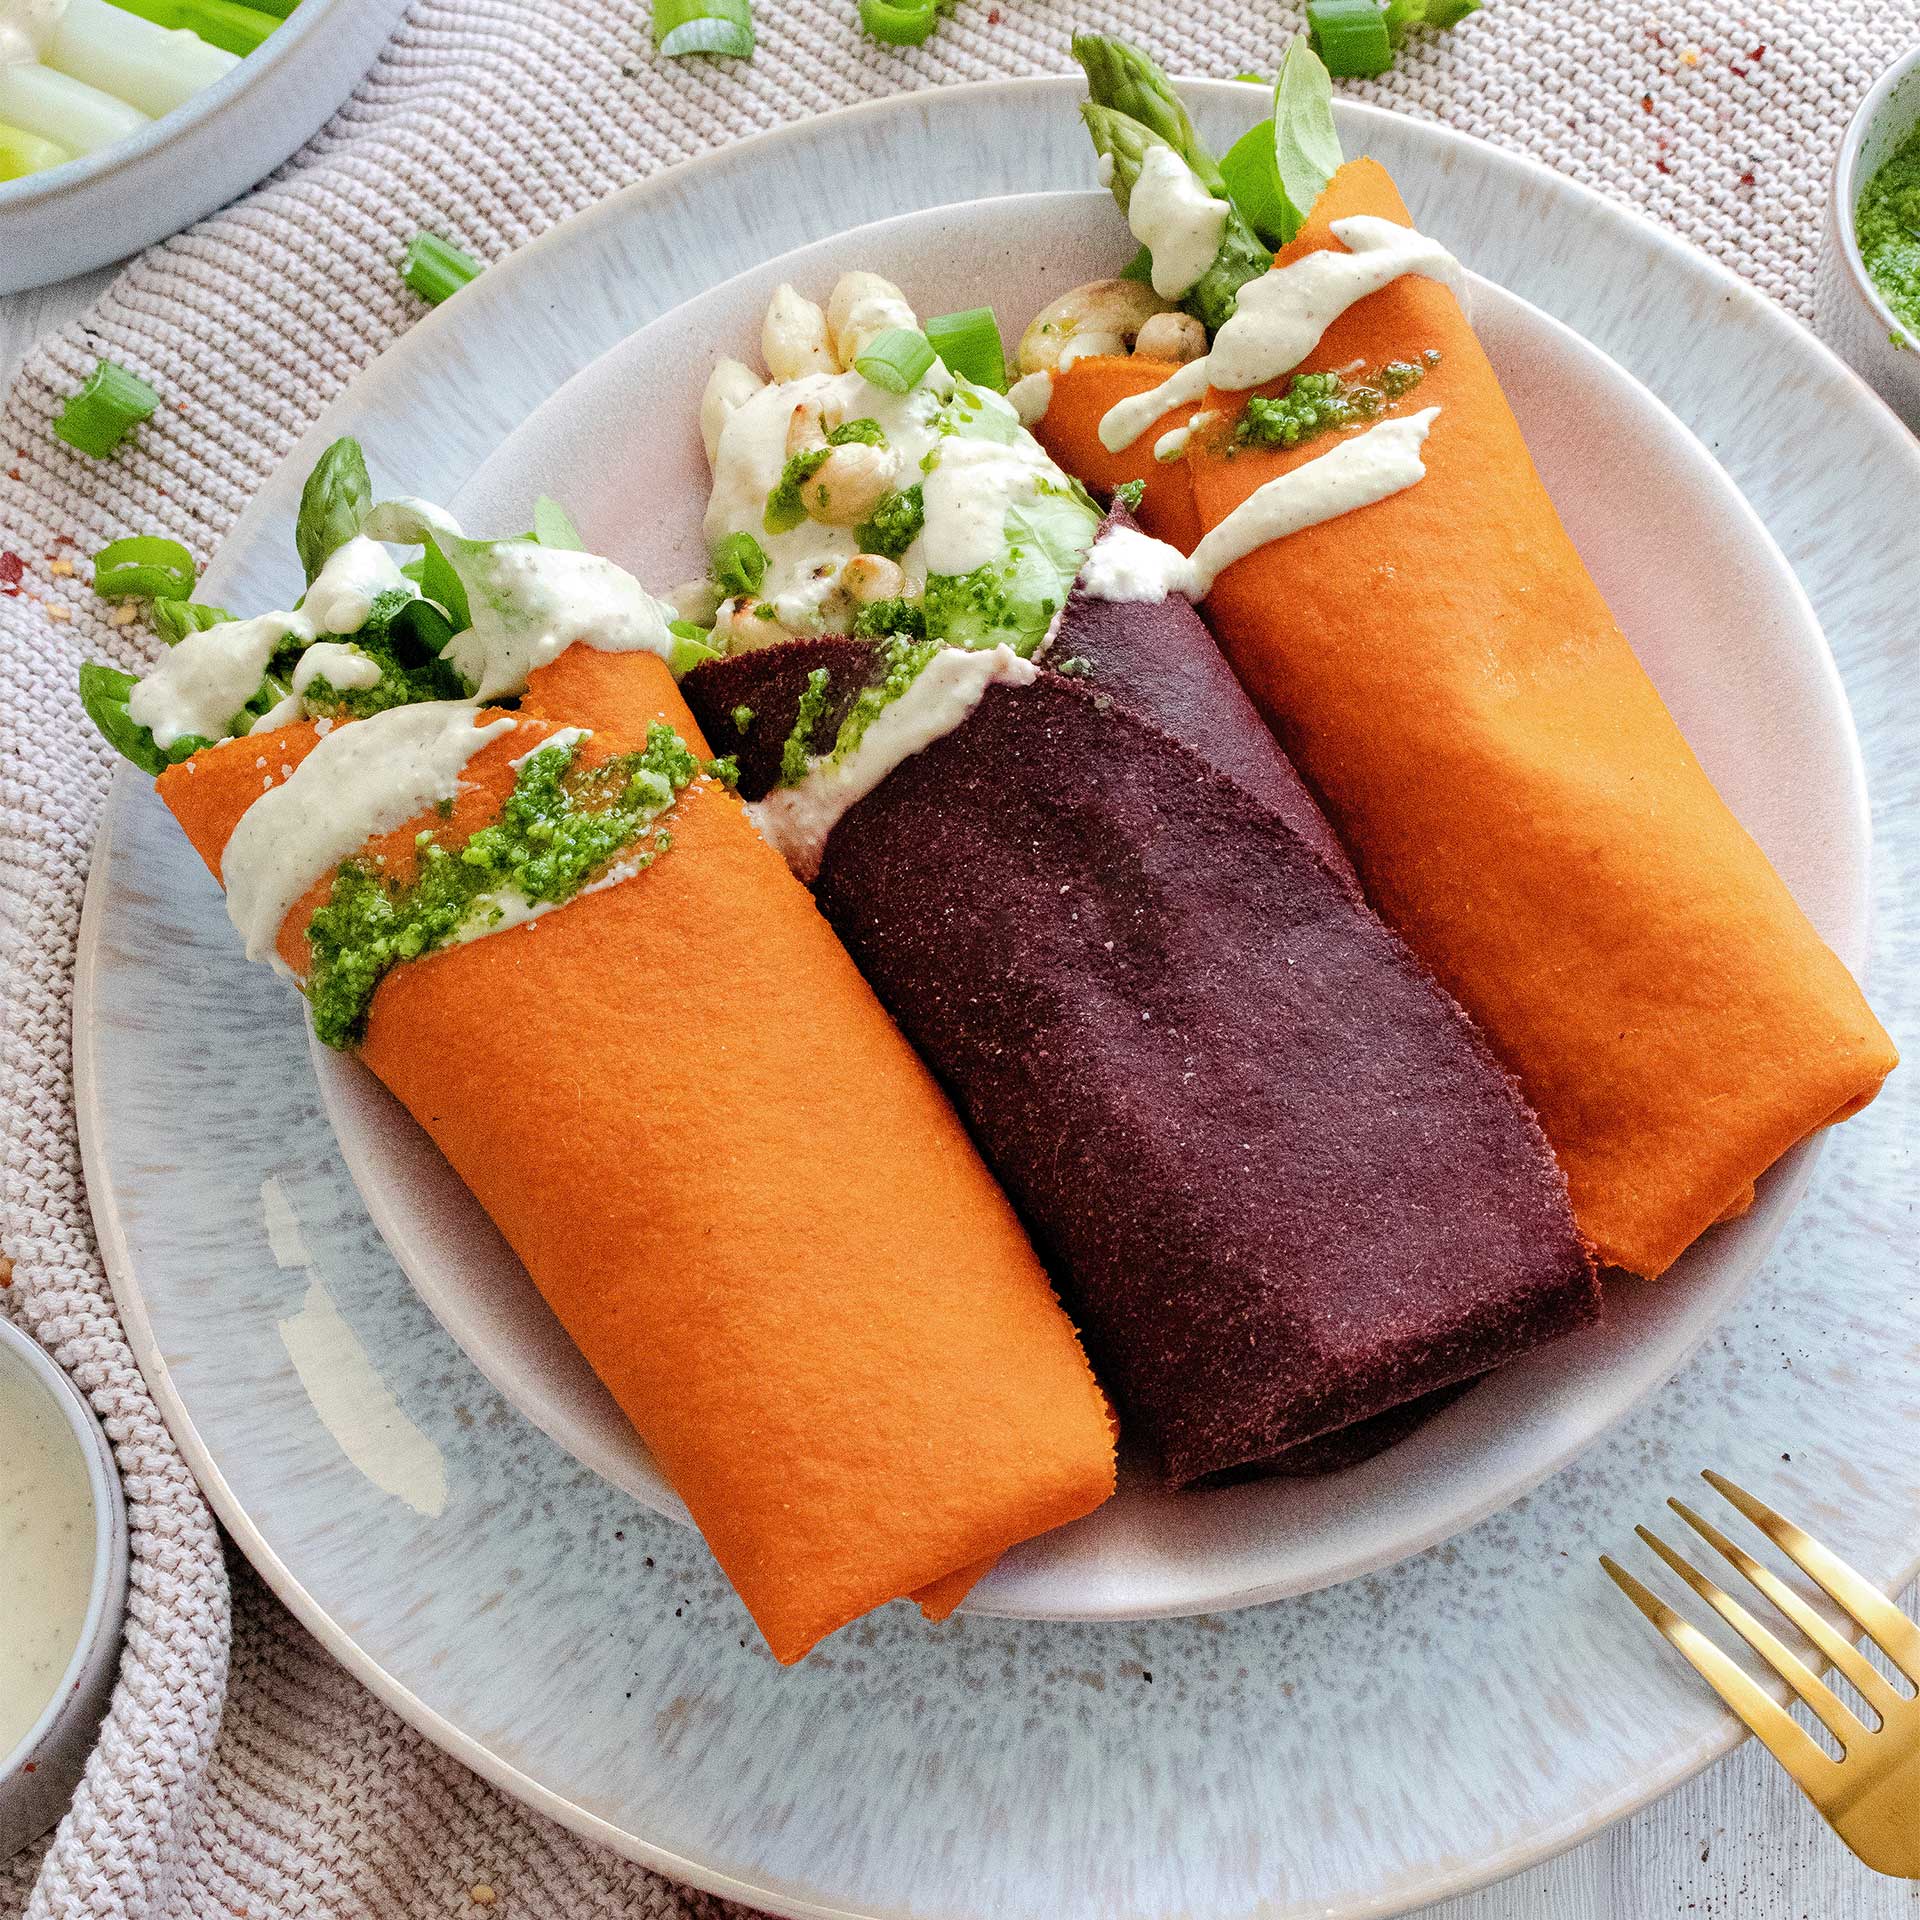 Karotten und Rote Beete Tortilla Wraps gefüllt mit Salat, Spargel, Cashewnüssen und getoppt mit Bärlauchpesto und Sauce Hollandaise